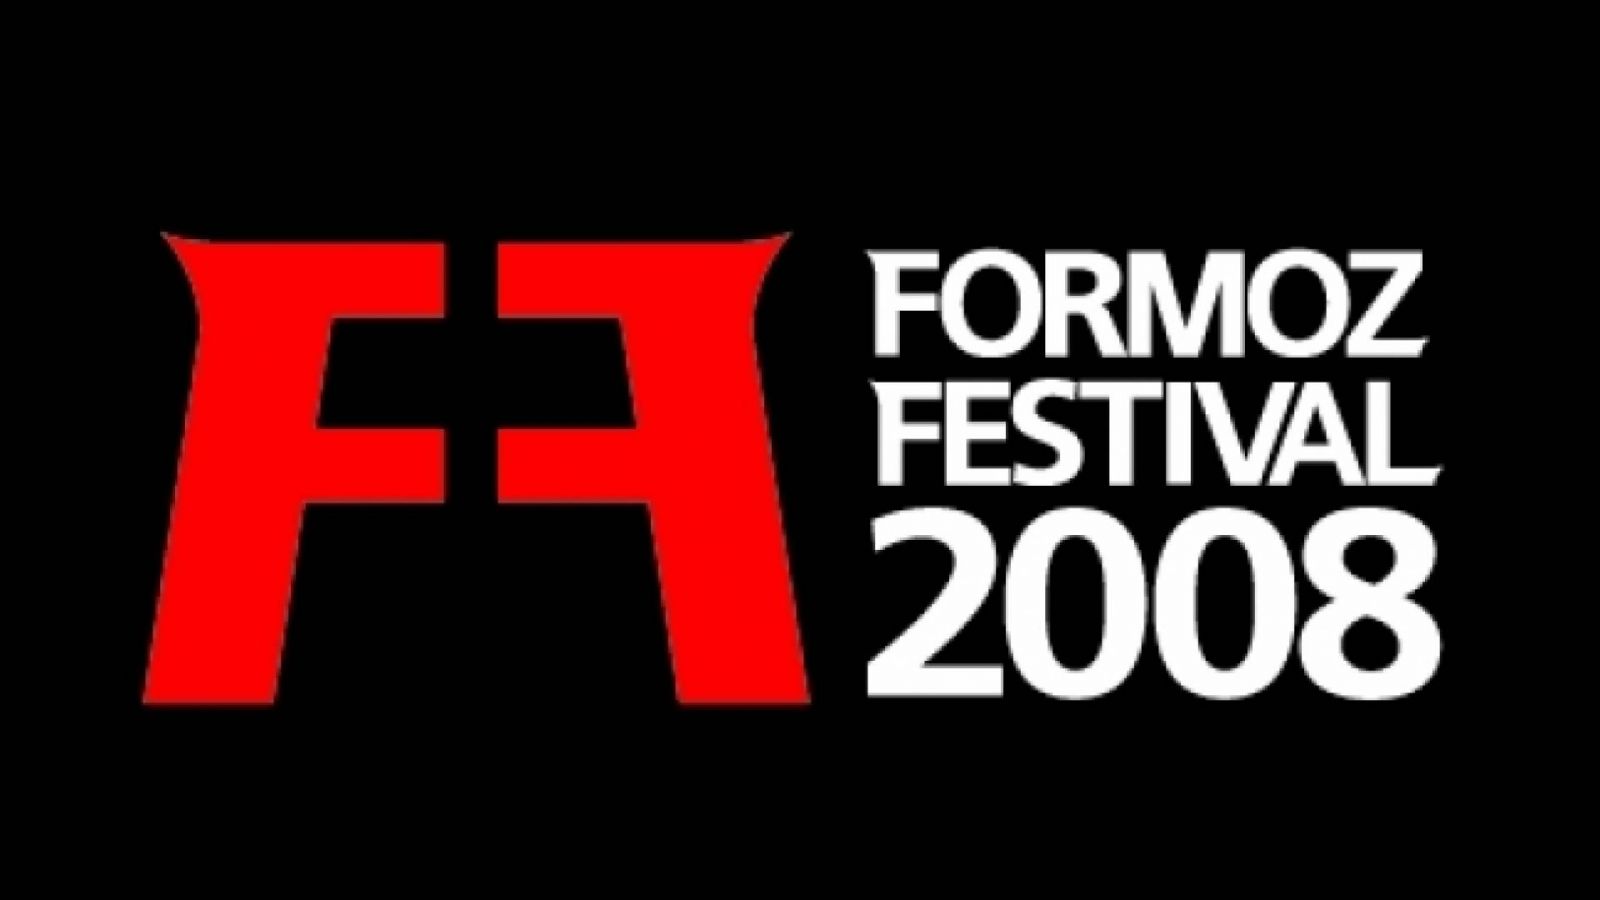 FORMOZ Festival - Parte 2 © Formoz Festival